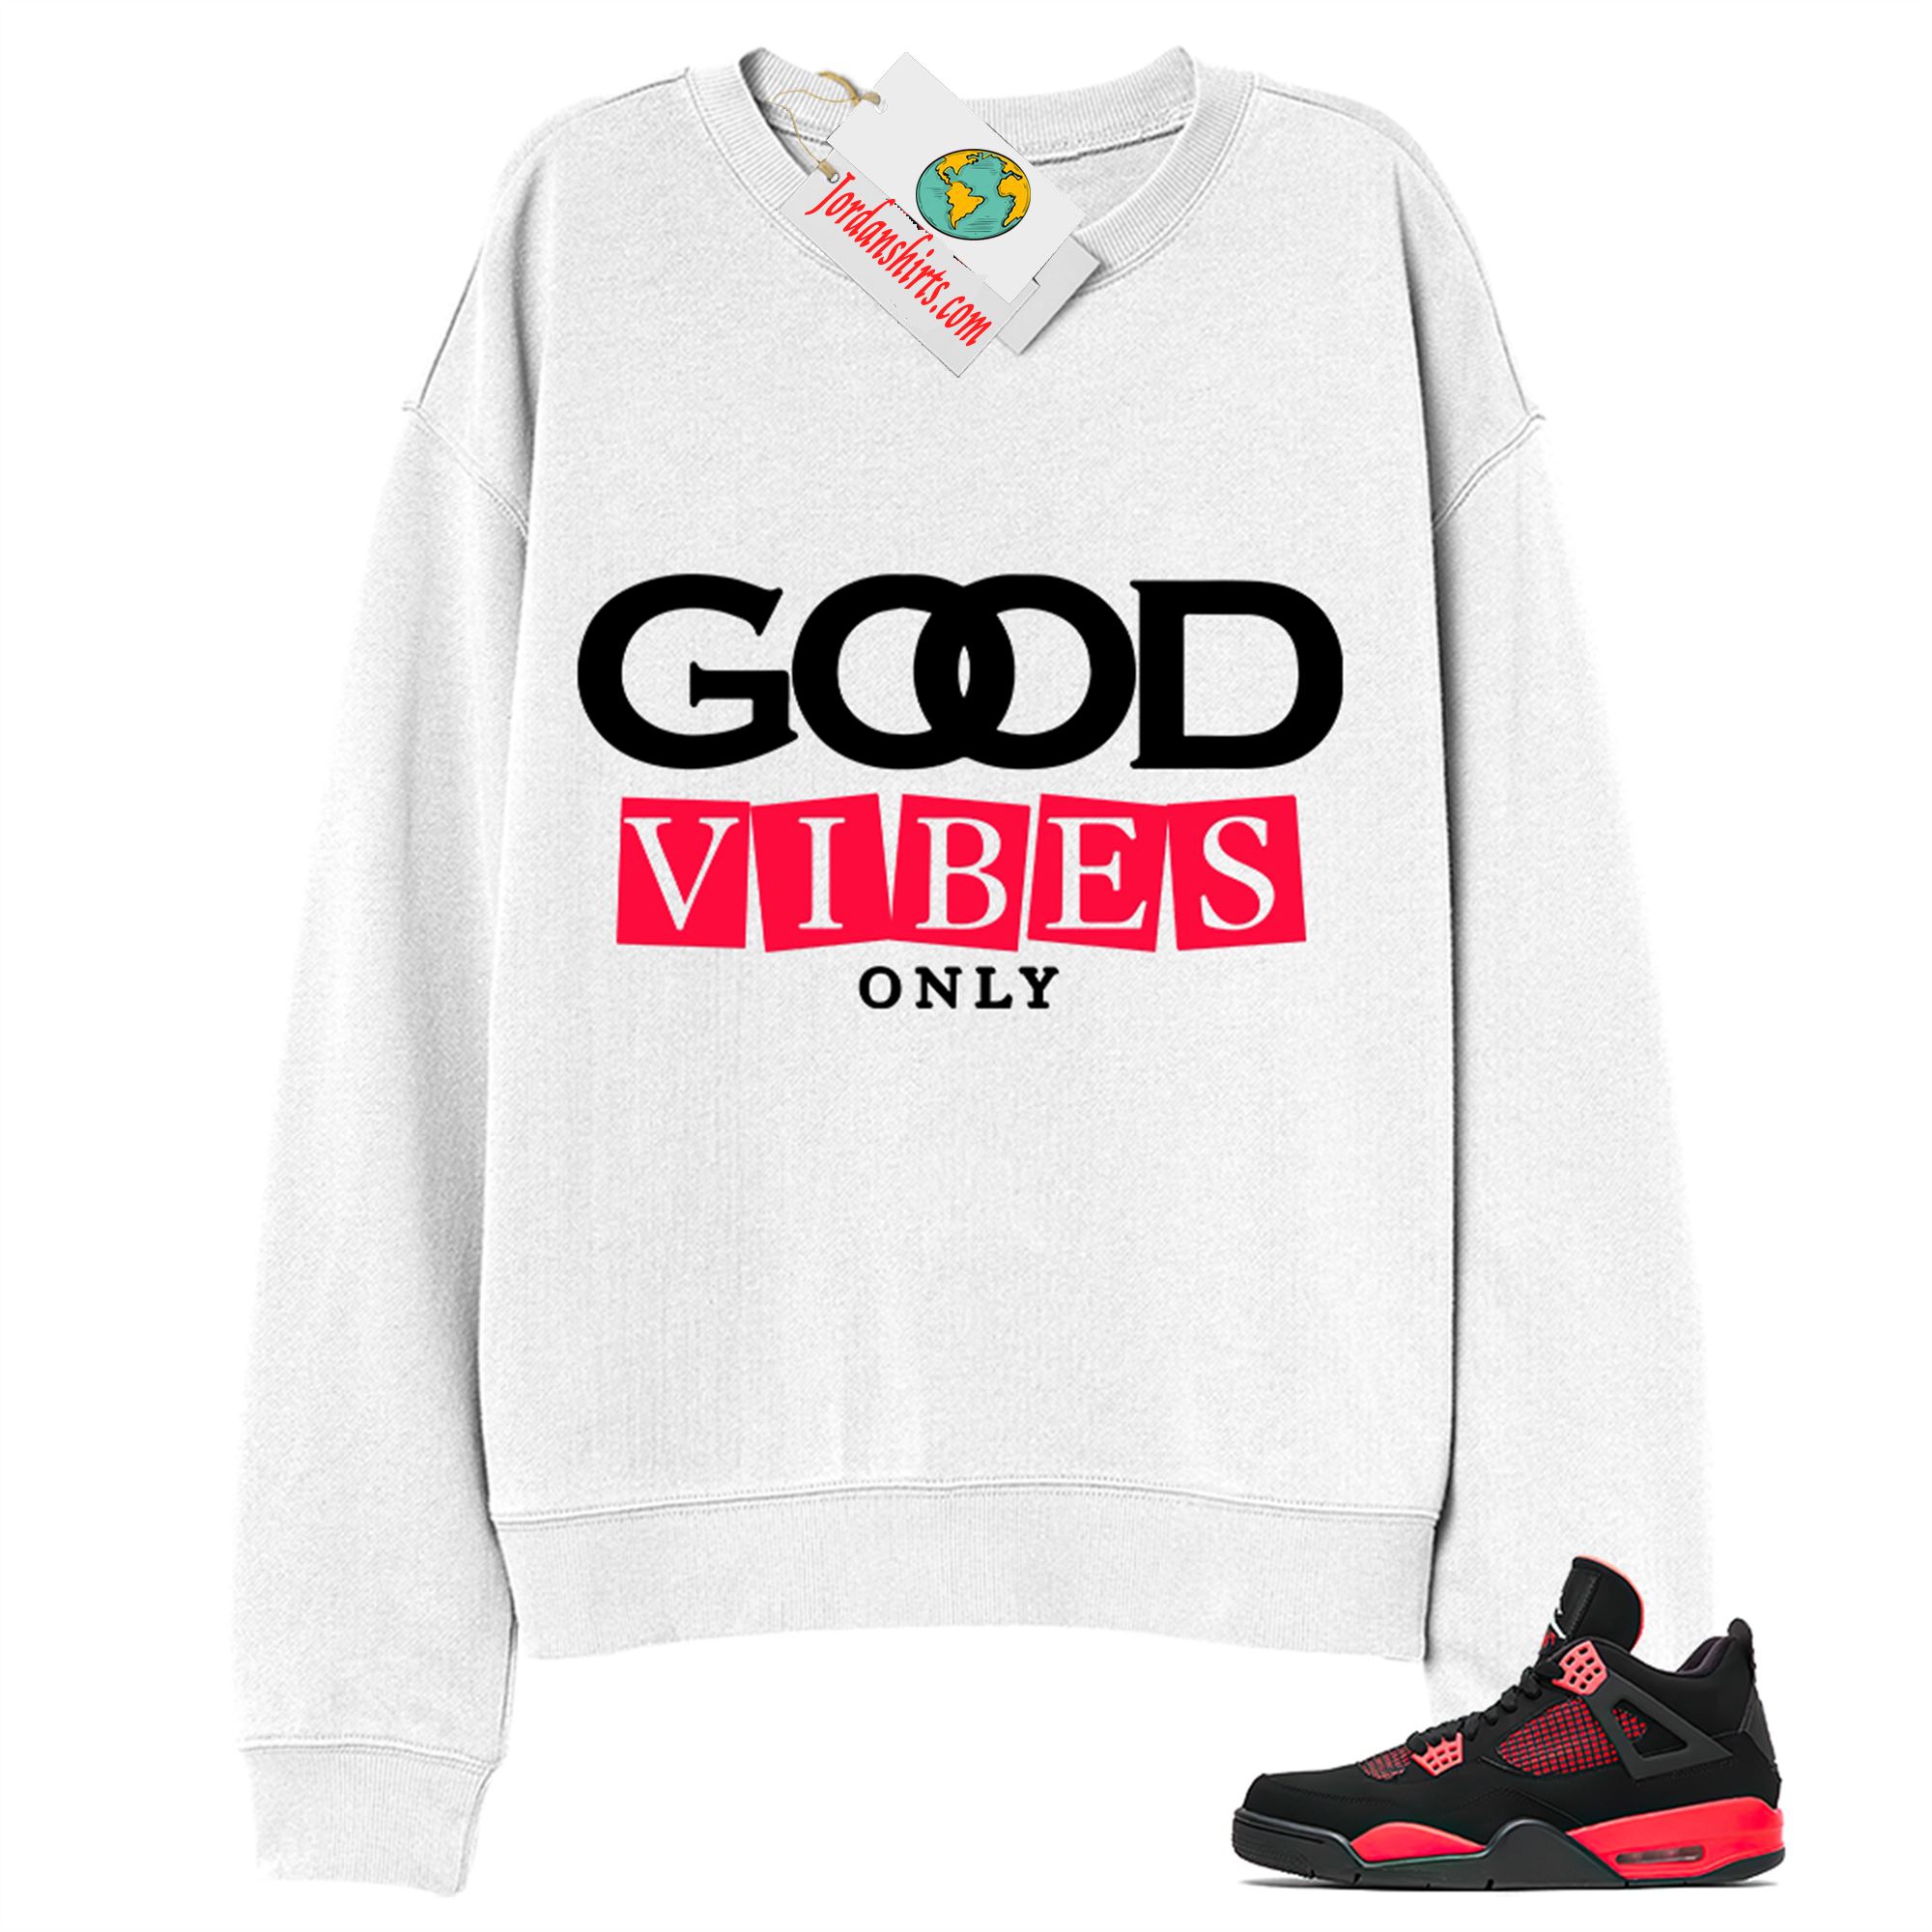 Jordan 4 Sweatshirt, Good Vibes Only White Sweatshirt Air Jordan 4 Red Thunder 4s Plus Size Up To 5xl